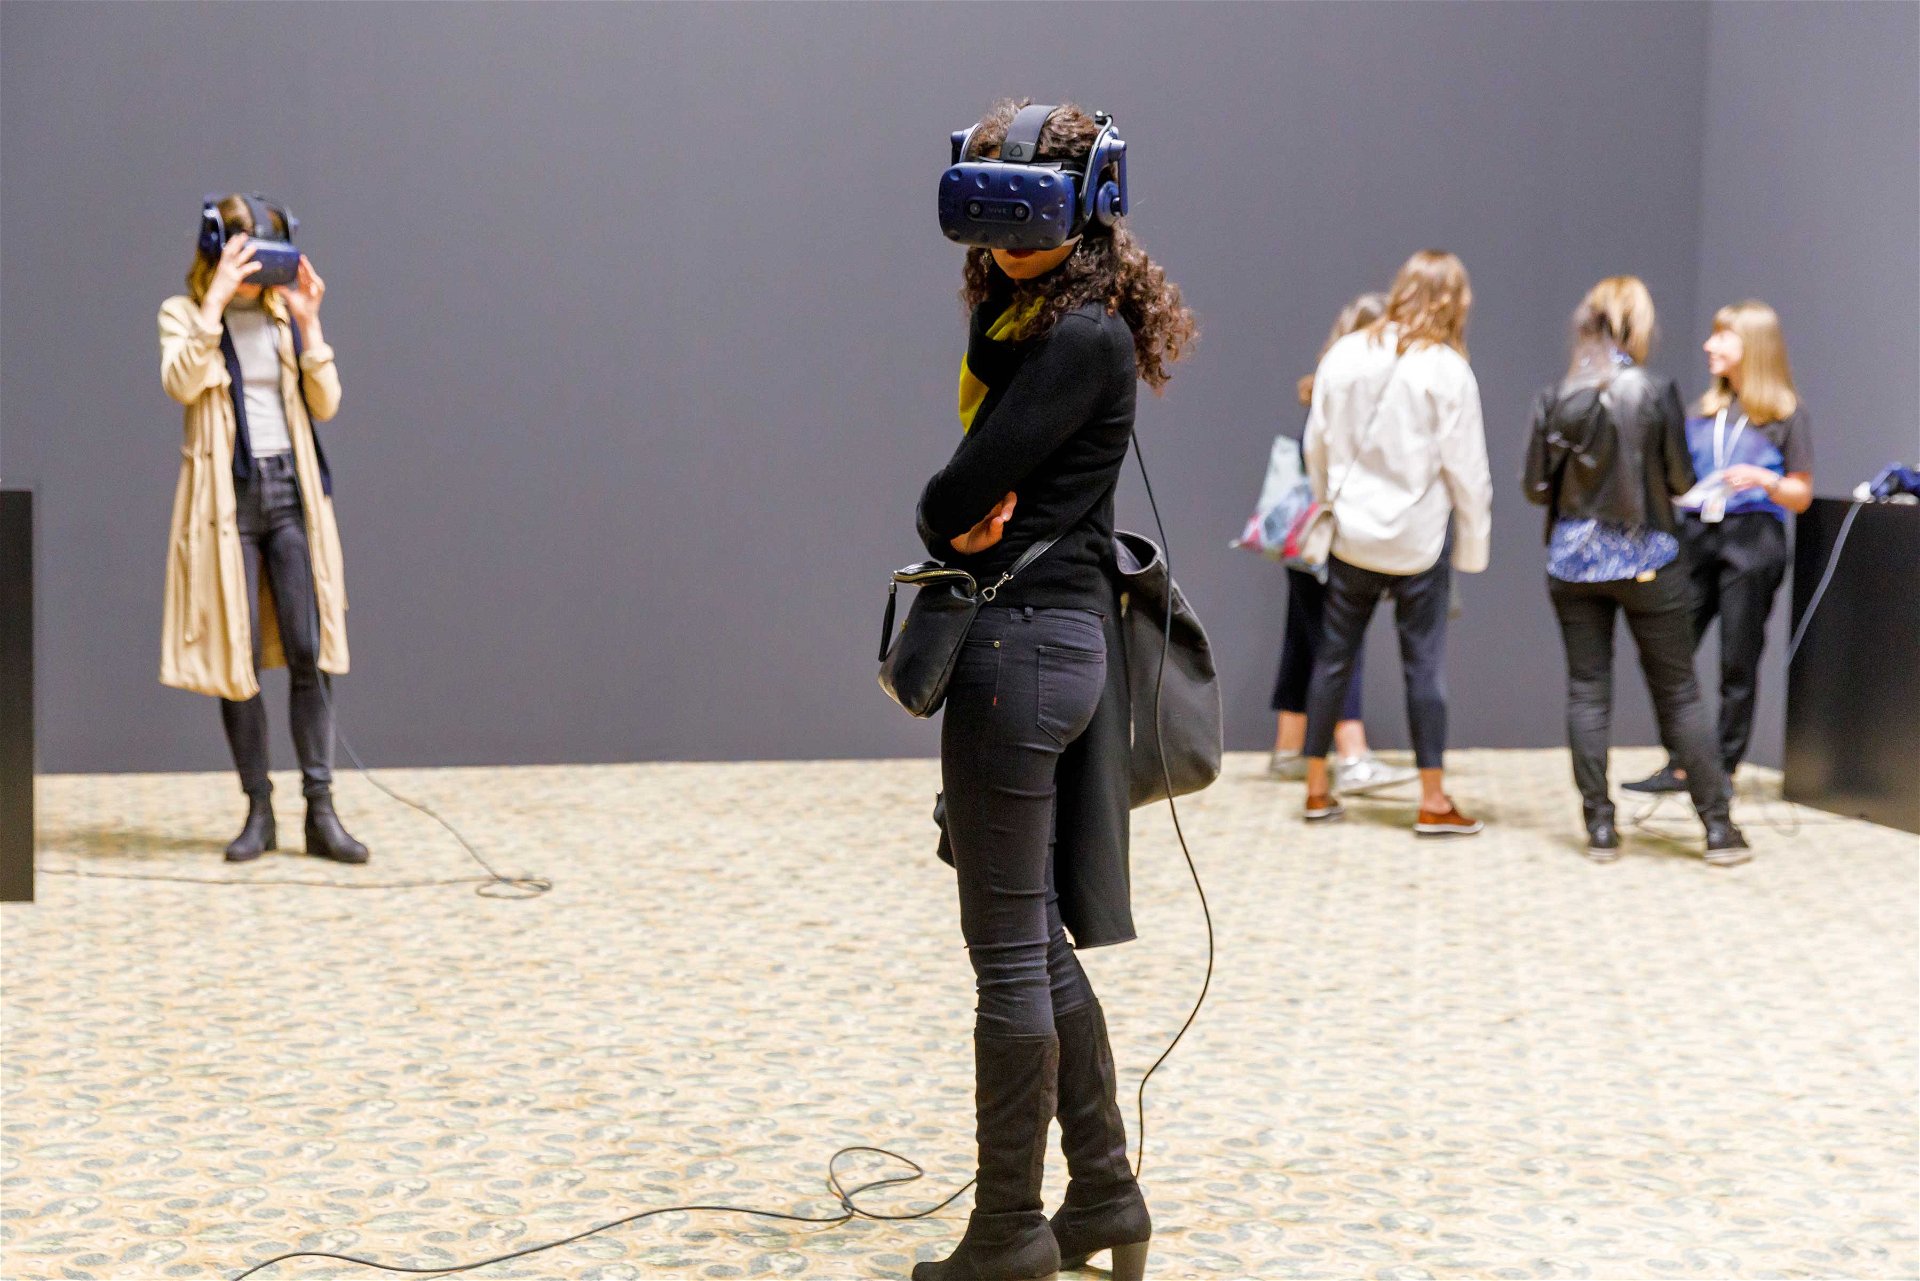 Hinter der Maske: Ist die Zukunft virtuell? Paul McCarthys »C.S.S.C. Coach Stage Stage Coach VR experiment Mary and Eve« auf der Art Basel 2019.